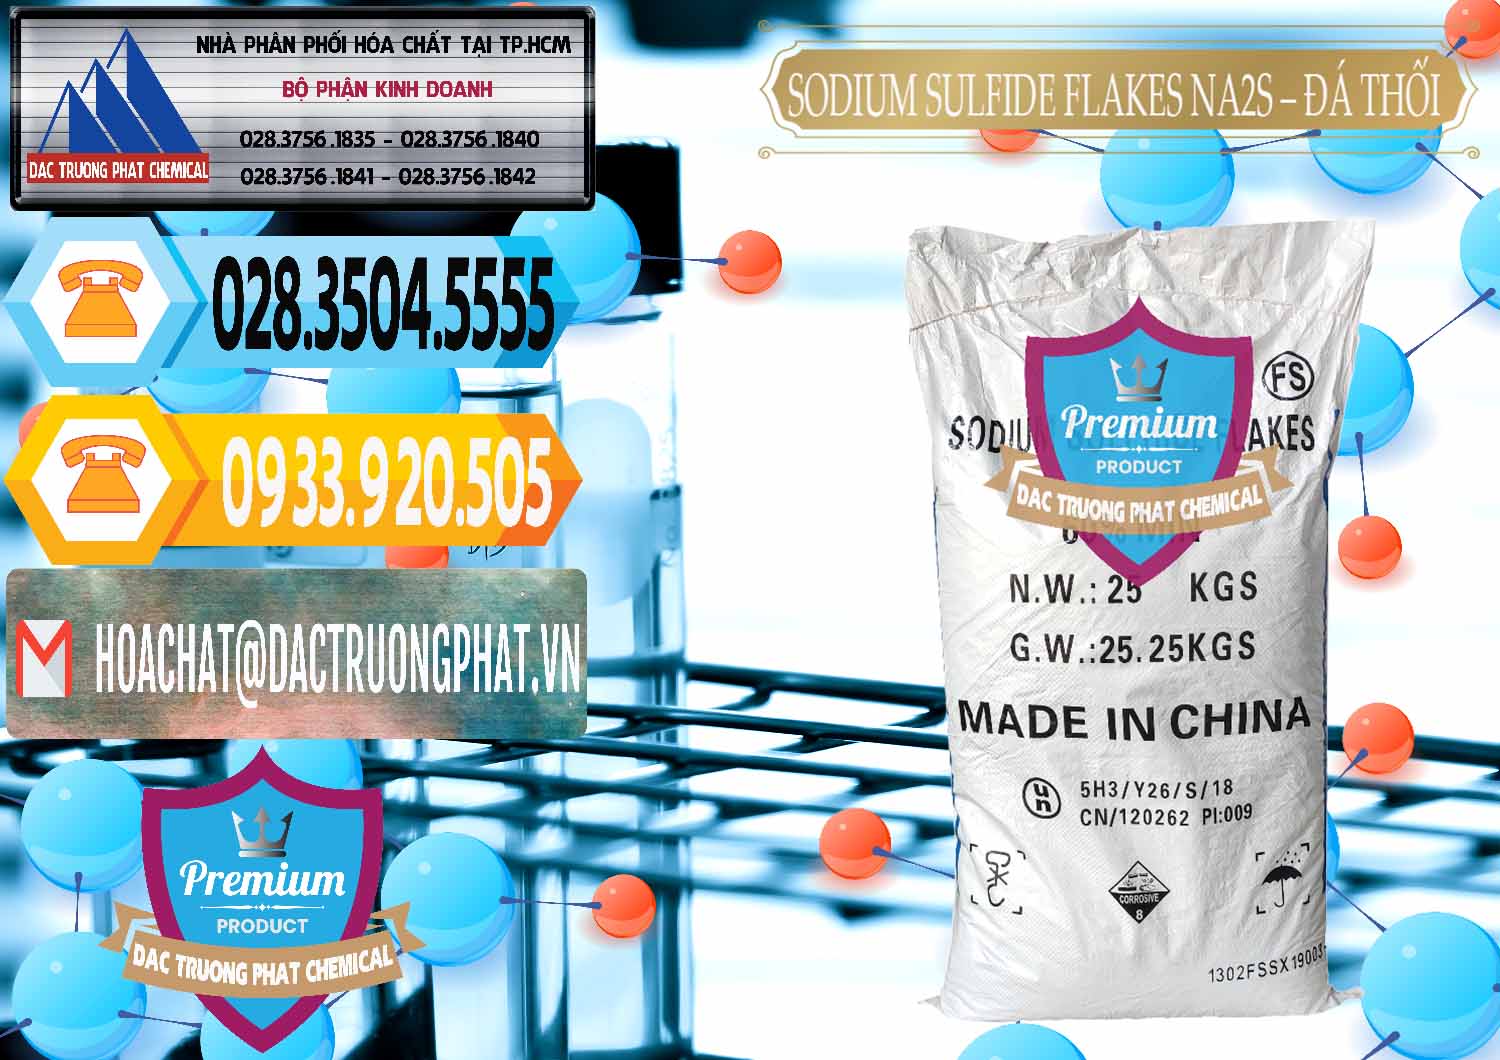 Nơi nhập khẩu & bán Sodium Sulfide Flakes NA2S – Đá Thối Đỏ Trung Quốc China - 0150 - Cty cung cấp _ phân phối hóa chất tại TP.HCM - hoachattayrua.net